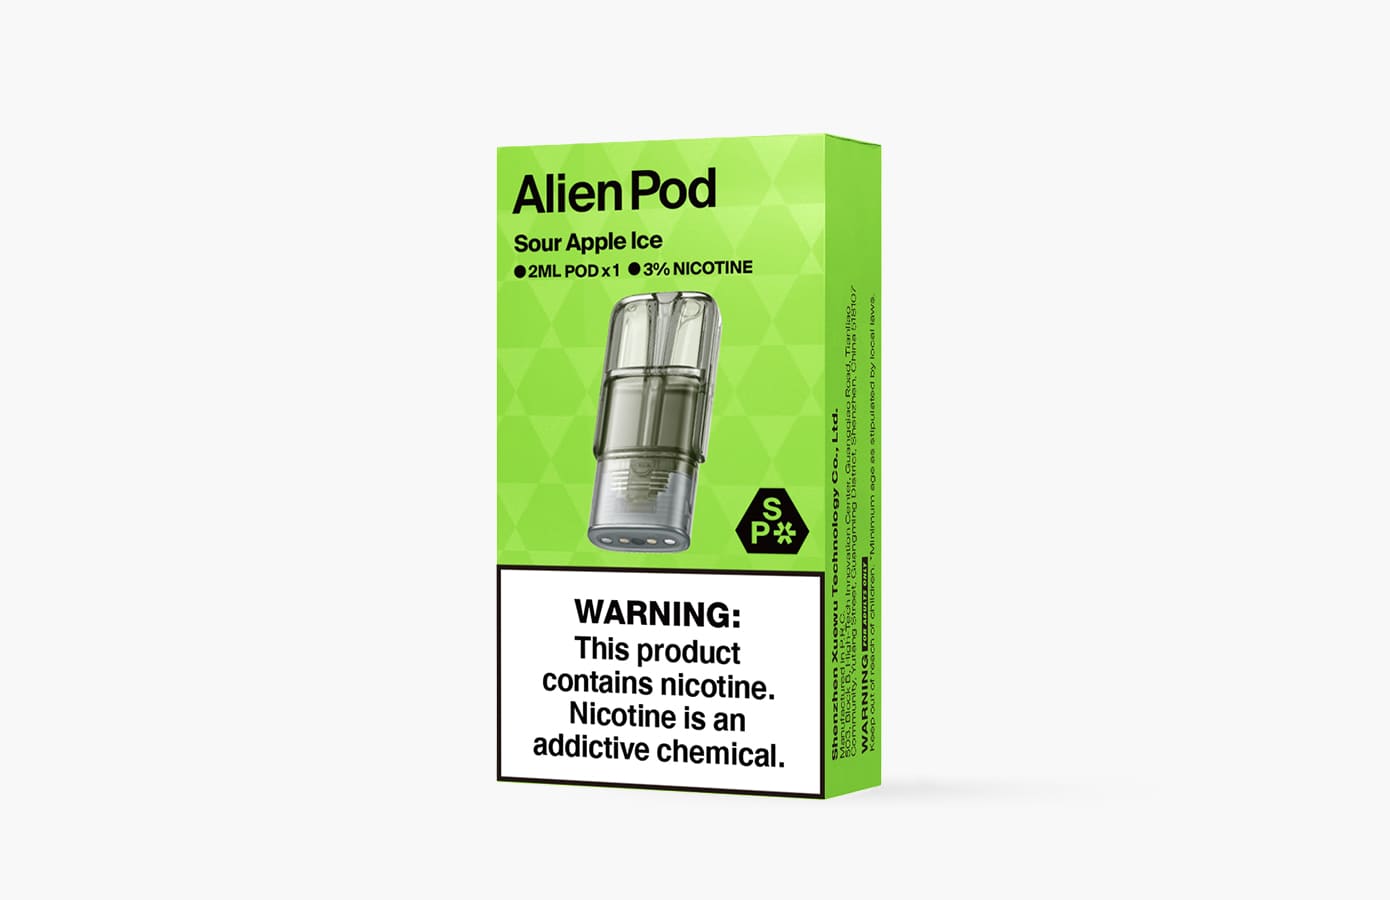 Alien Pods